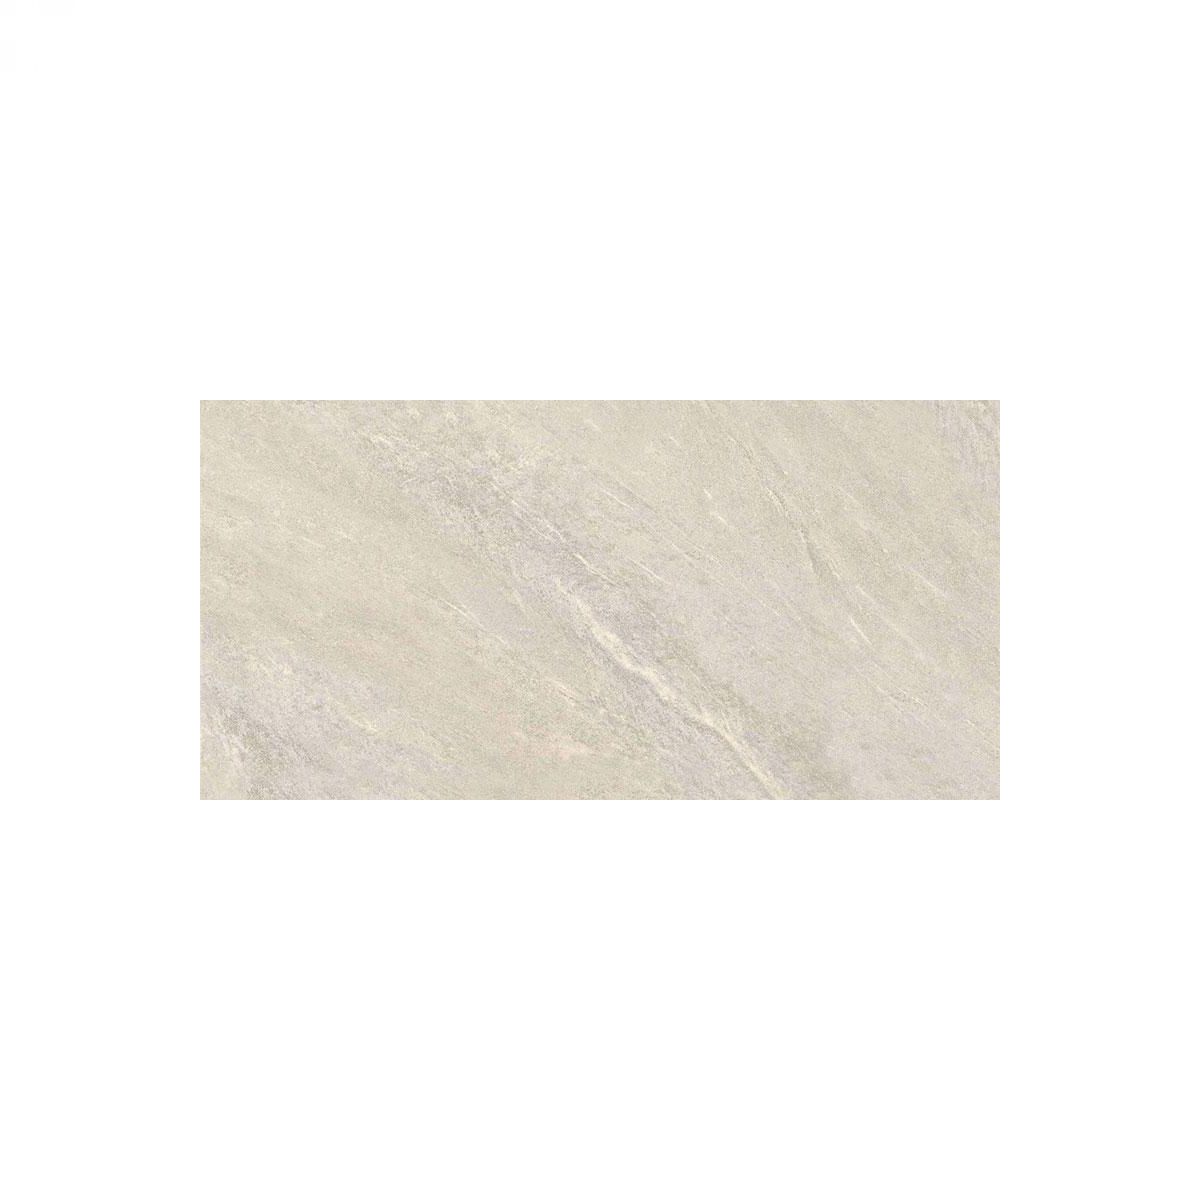 ASPEN Bianco 31x62 #1,35m2